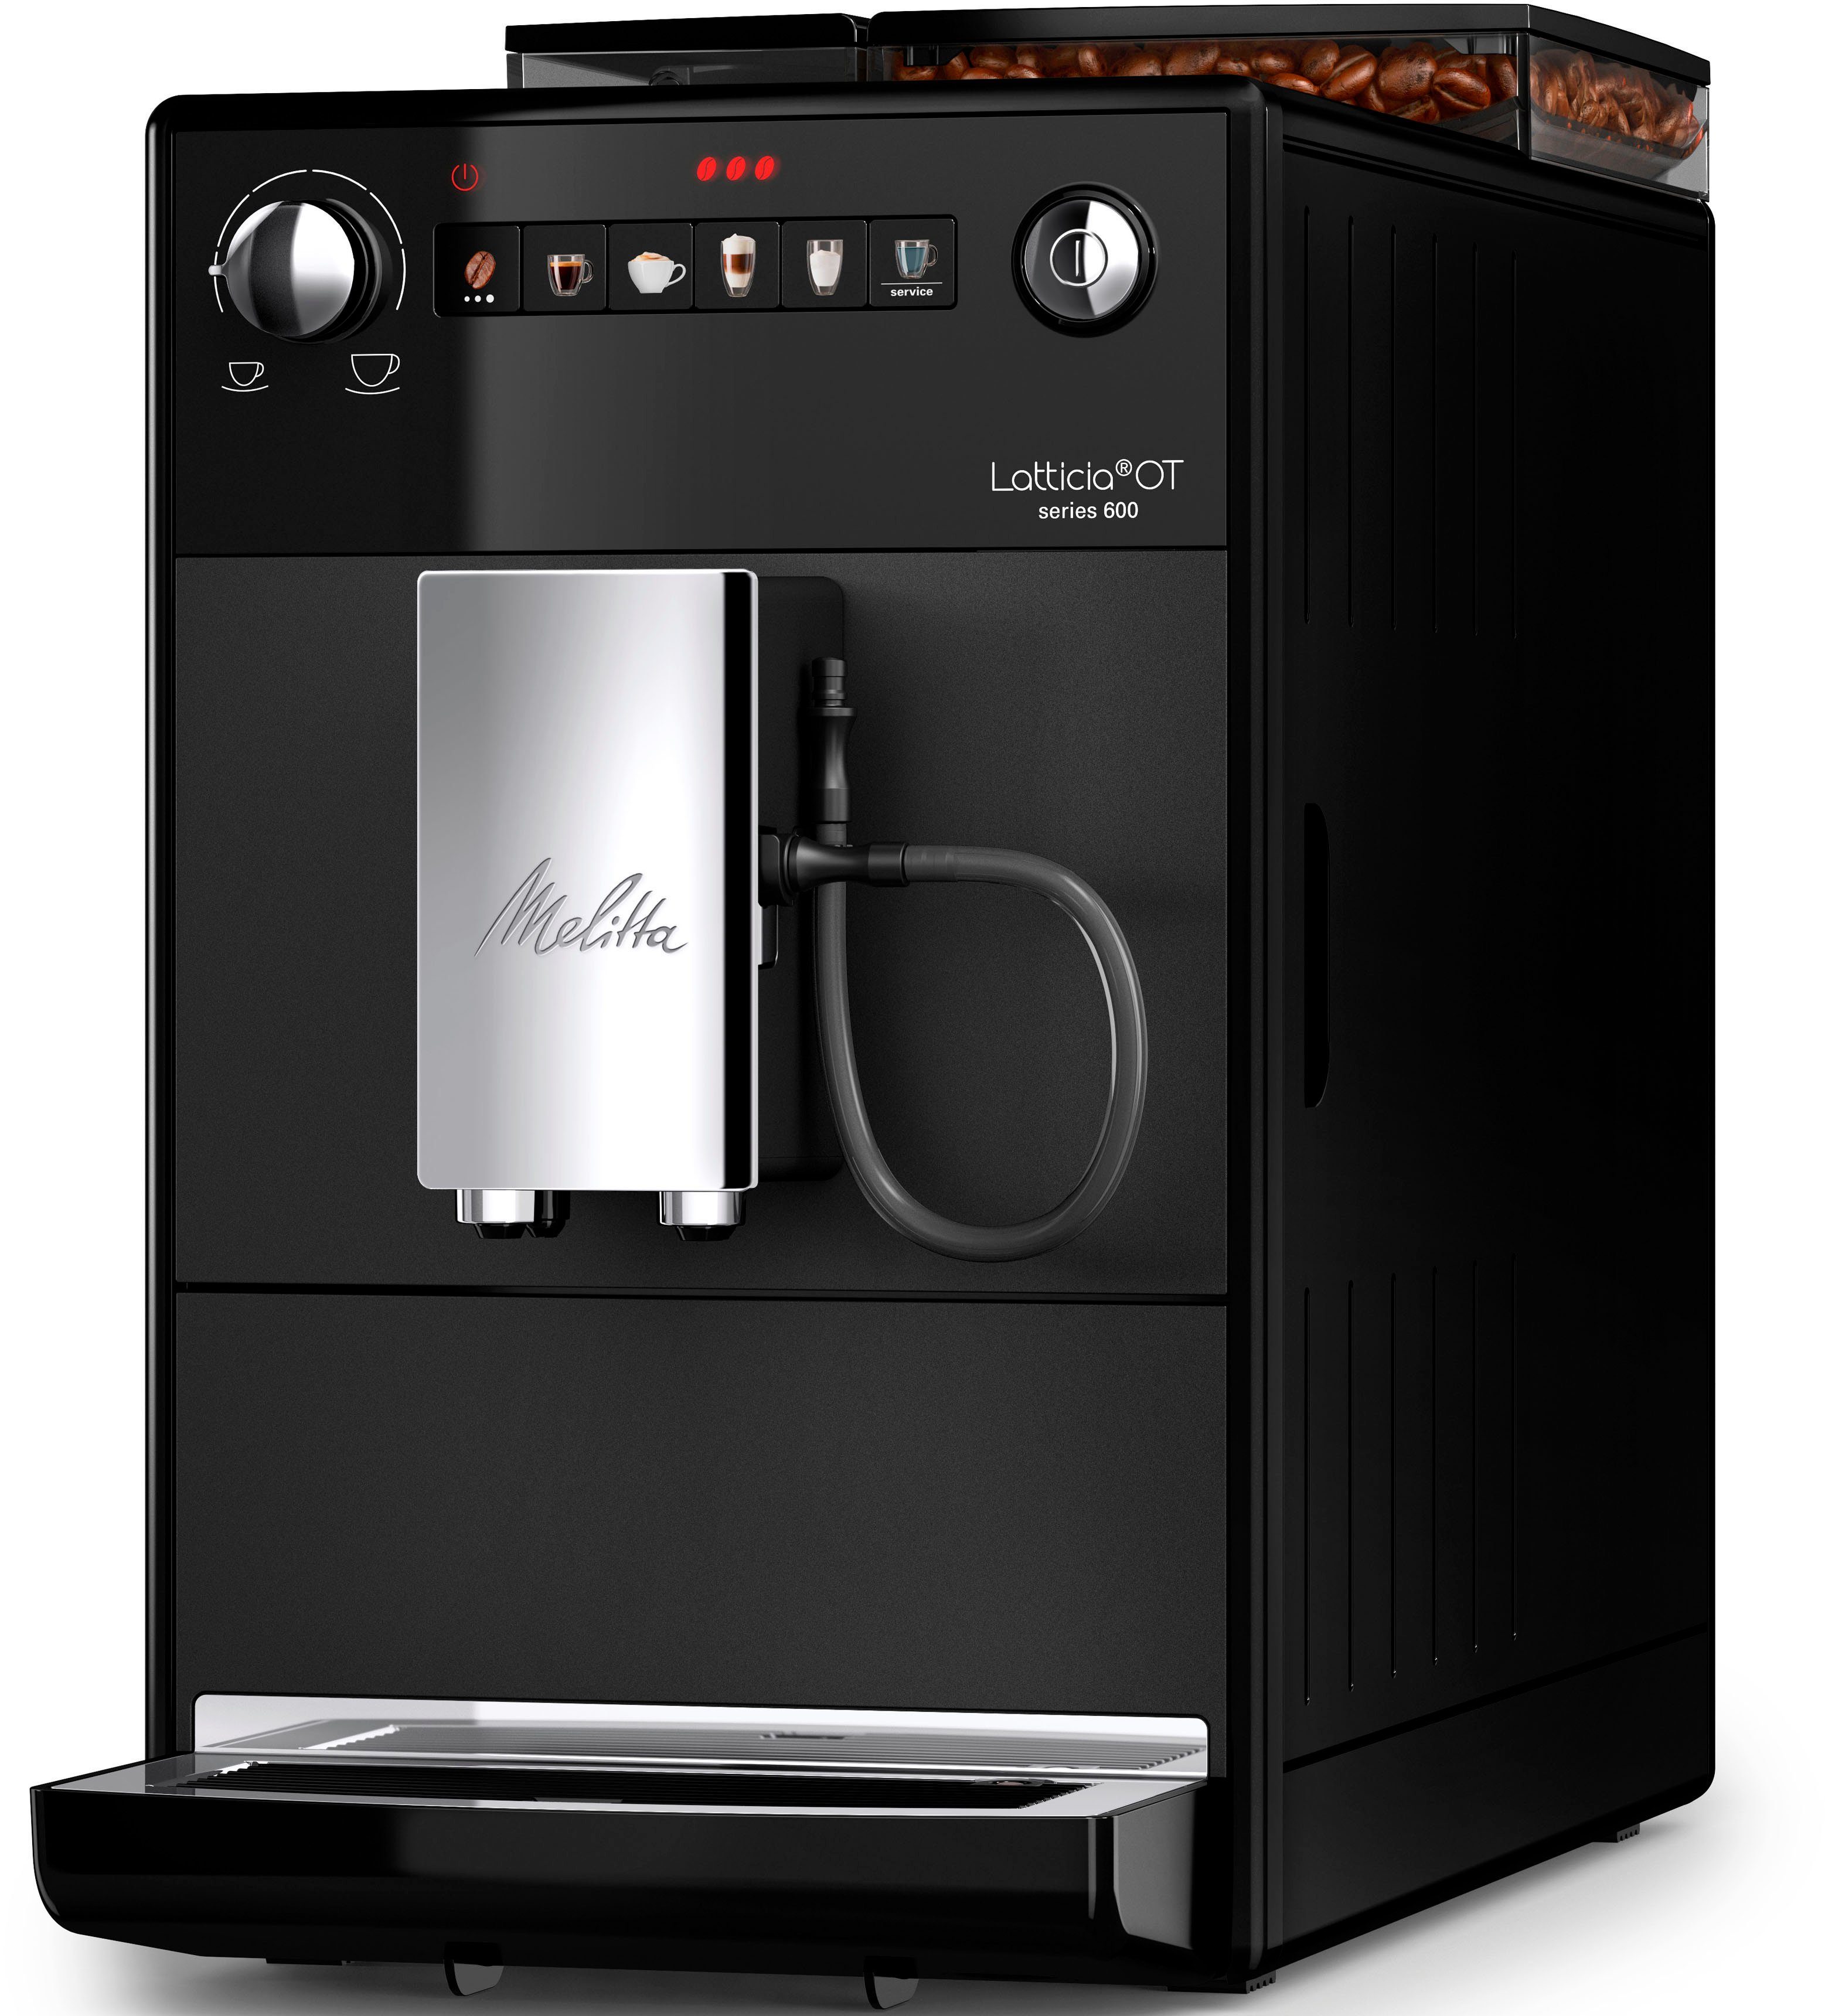 aber schwarz, & XL Bohnenbehälter F300-100, Melitta Touch XL kompakt, One Kaffeevollautomat Wassertank Latticia®